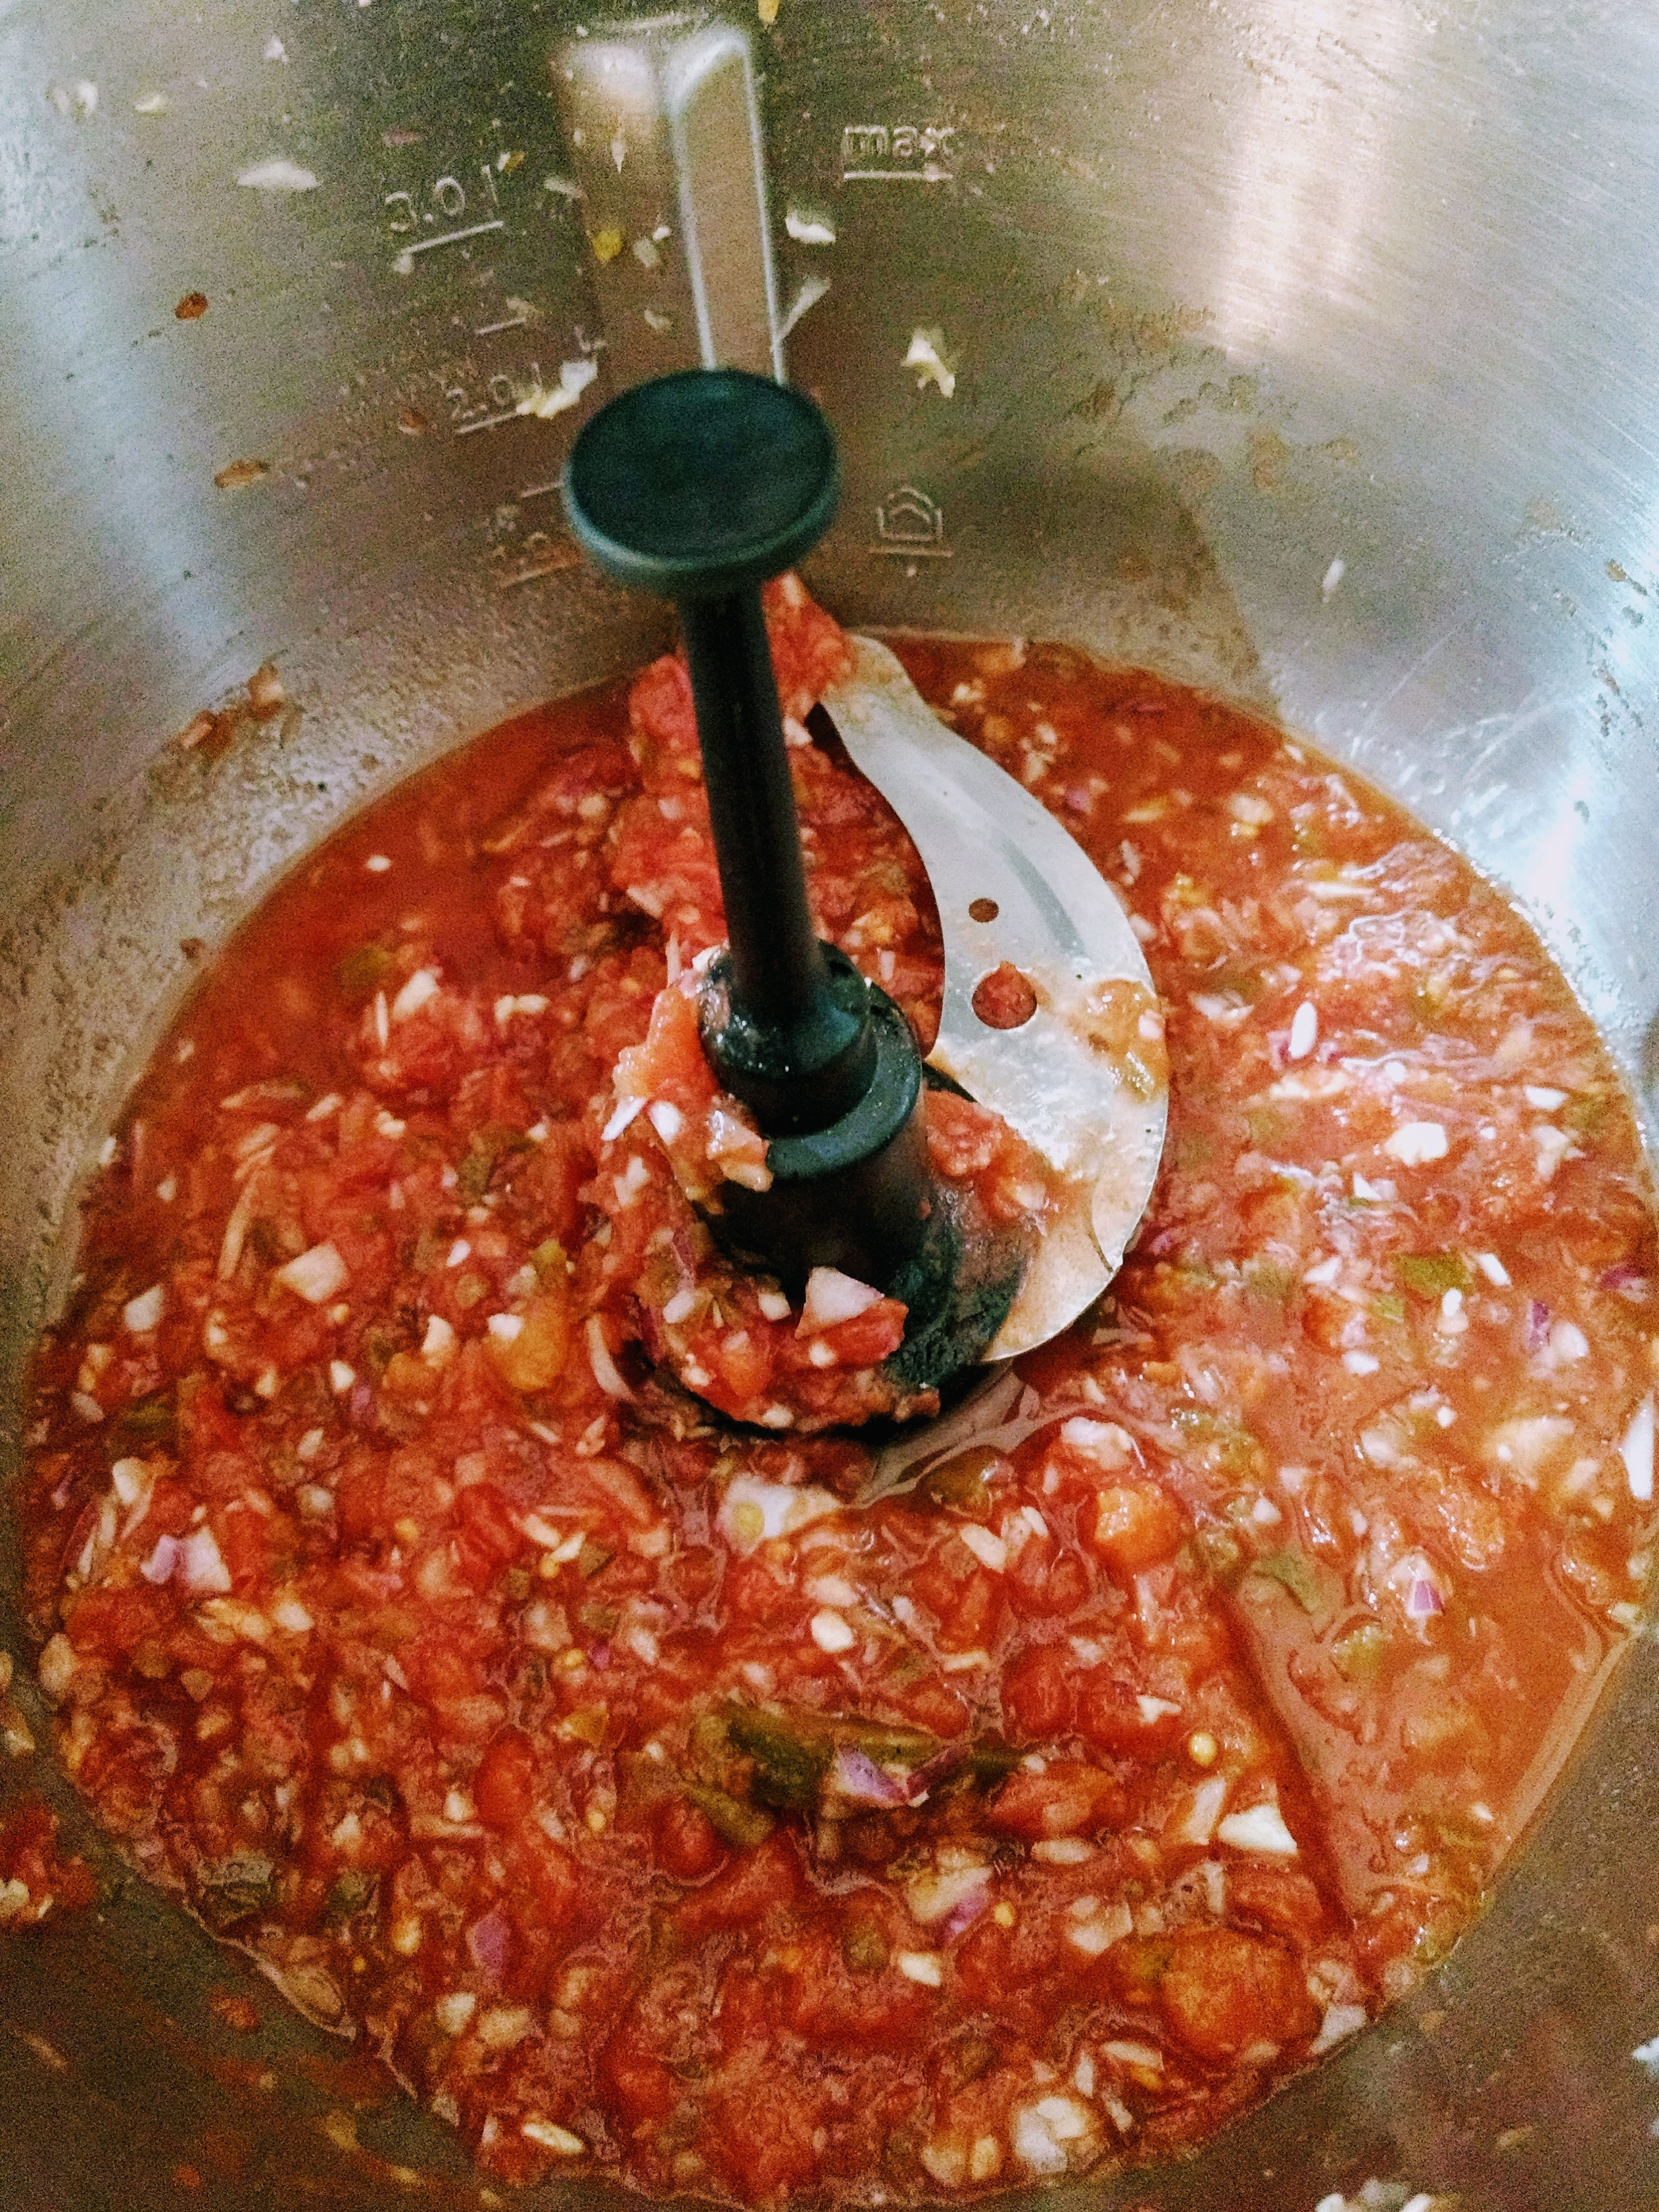 1 Dose gehackte Tomaten hinzugeben. Würzen mit ½ gestrichenen TL Salz, etwas Pfeffer, 1-2 Spritzer Zitrone und 1 Prise Zucker.Den Deckel schließen, den Messerbecher einsetzen und alles miteinander verrühren (Universalmesser | Stufe 7 | 30 Sek.).